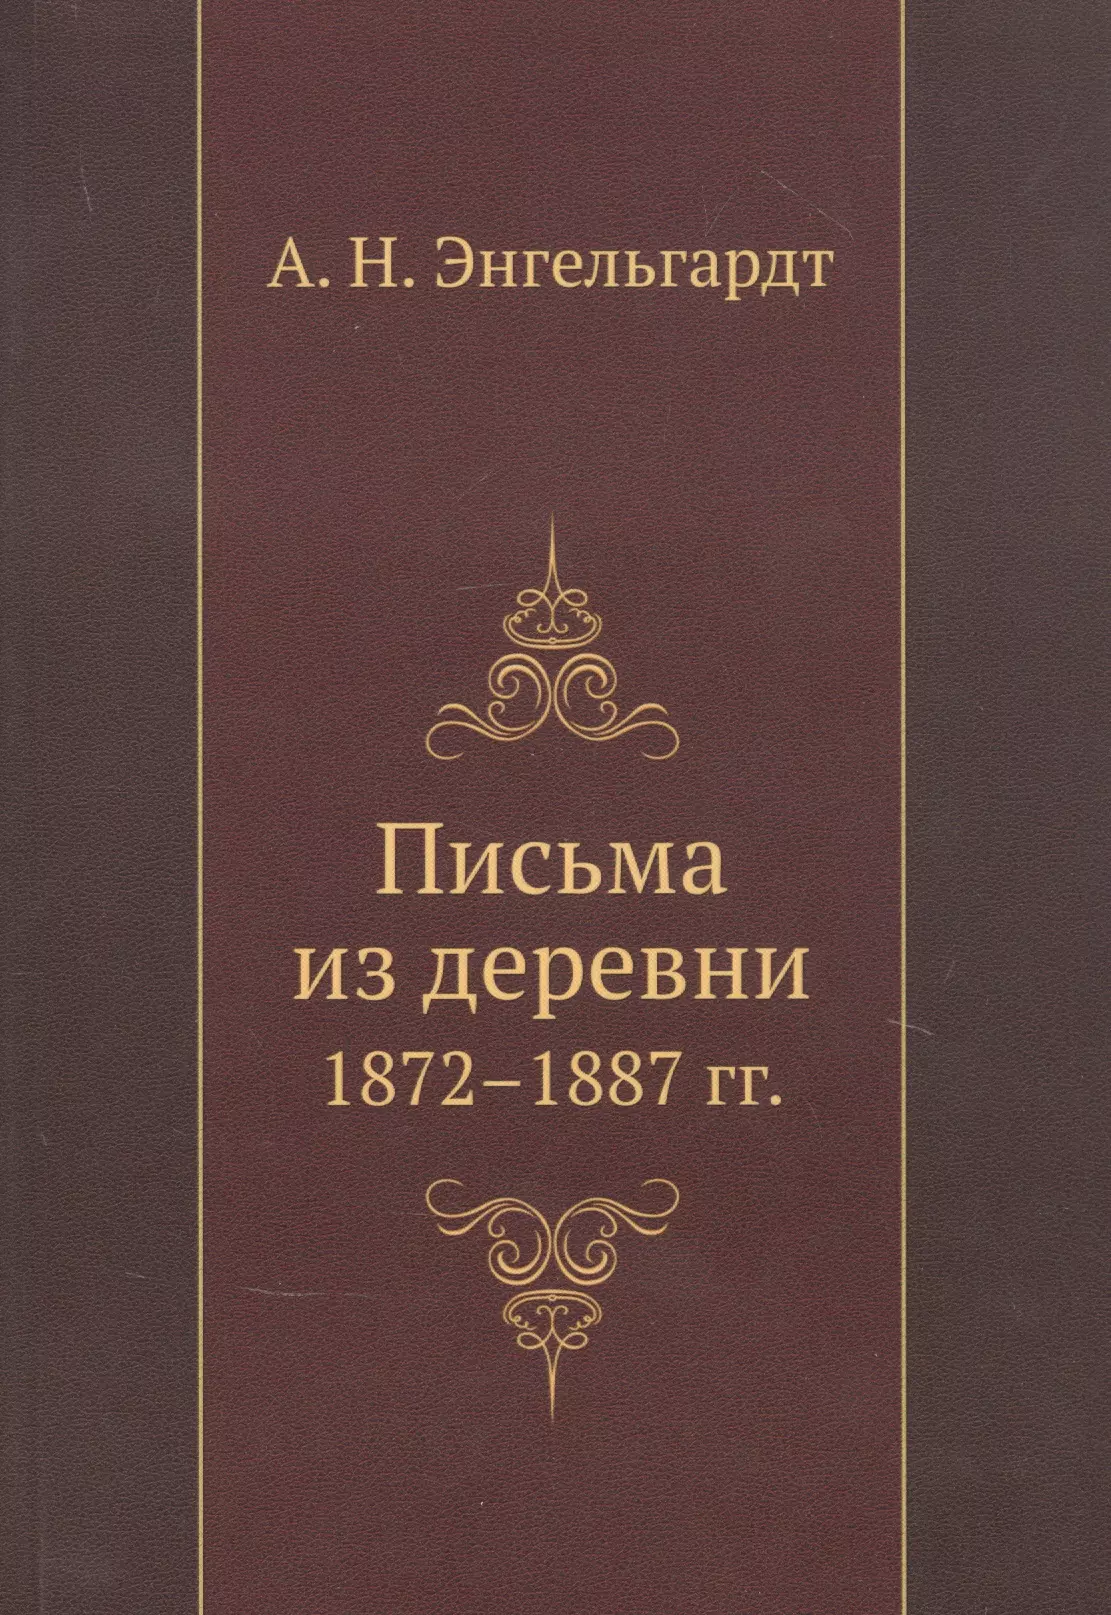 Энгельгардт А.Н. - Письма из деревни 1872-1887 гг.